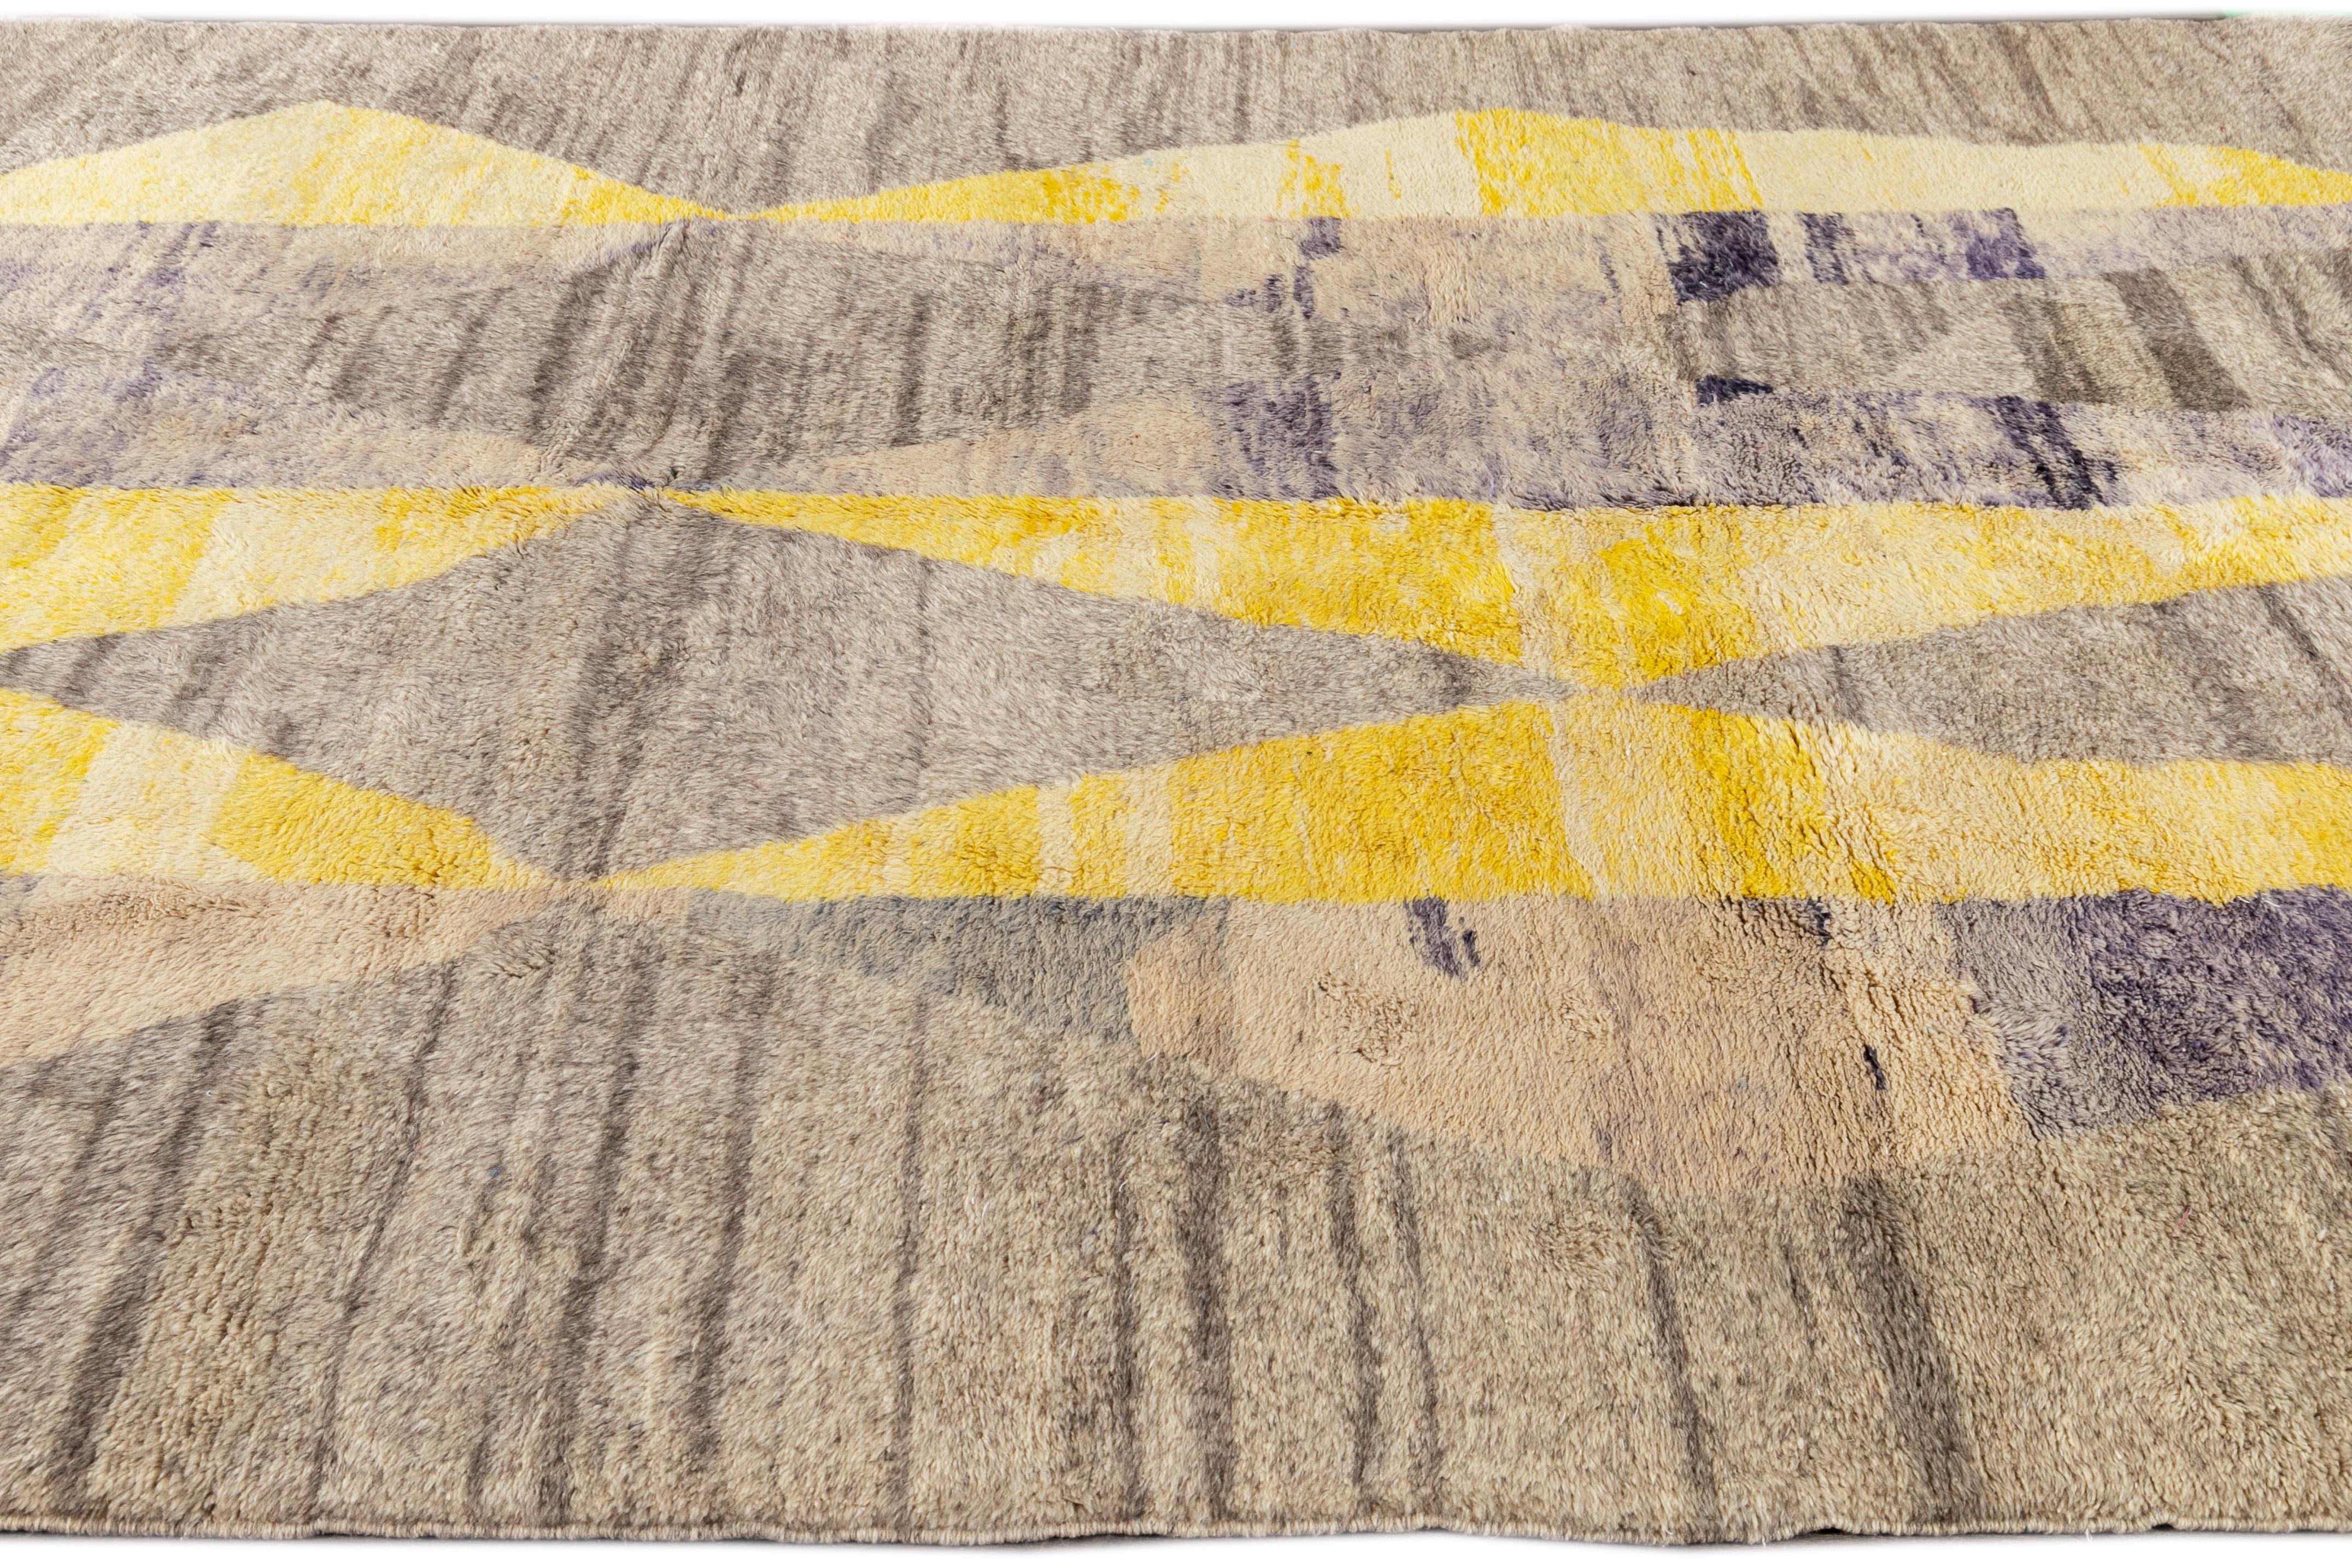 Dieser zeitgenössische marokkanische Teppich aus dem 21. Jahrhundert zeichnet sich durch ein neutrales hellbraunes/graues Feld und abstrakte geometrische Muster mit blau-violetten und gelben Akzenten aus.

Dieser Teppich misst: 7'9' x 10'7